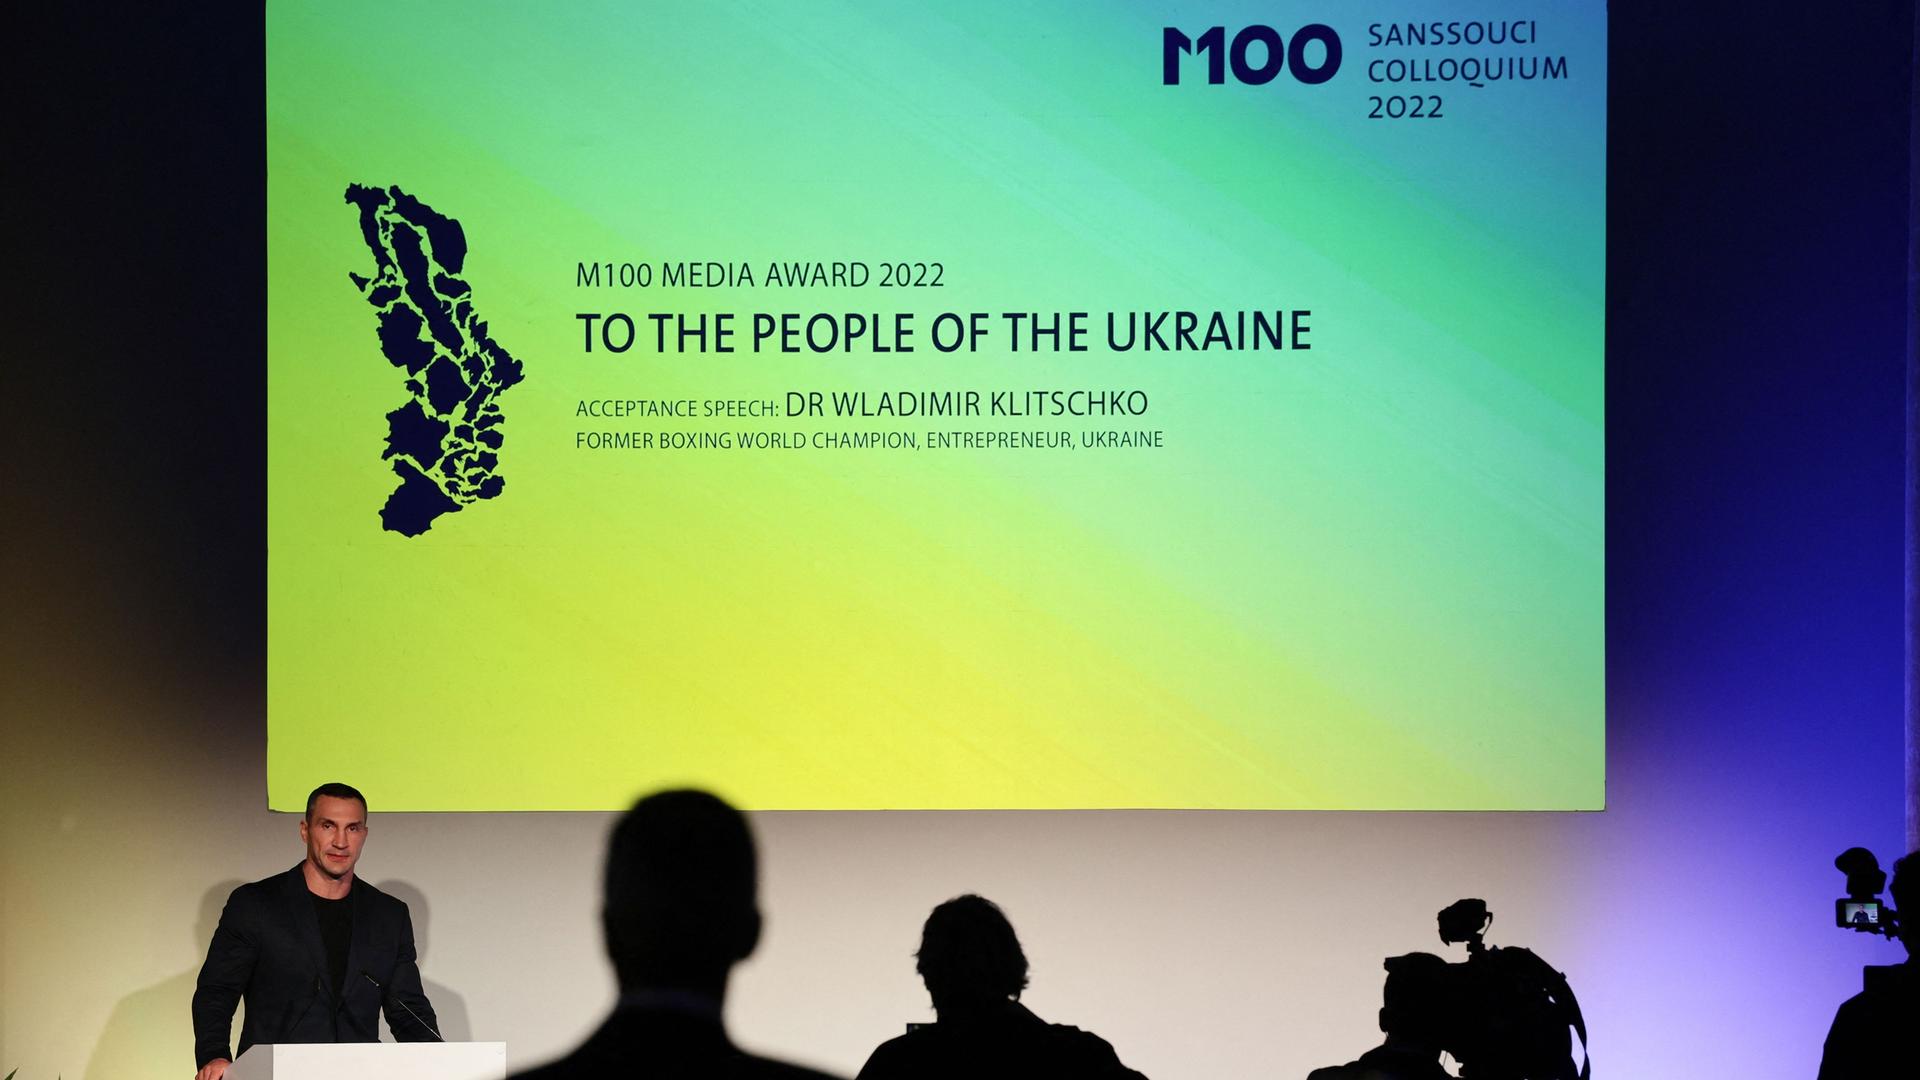 Der frühere Schwergewichts-Boxer Wladimir Klitschko bei der Verleihung in Potsdam am Rednerpult, hinter ihm eine Leinwand mit der Aufschrift: "M100 Media Award - To the people of the Ukraine"